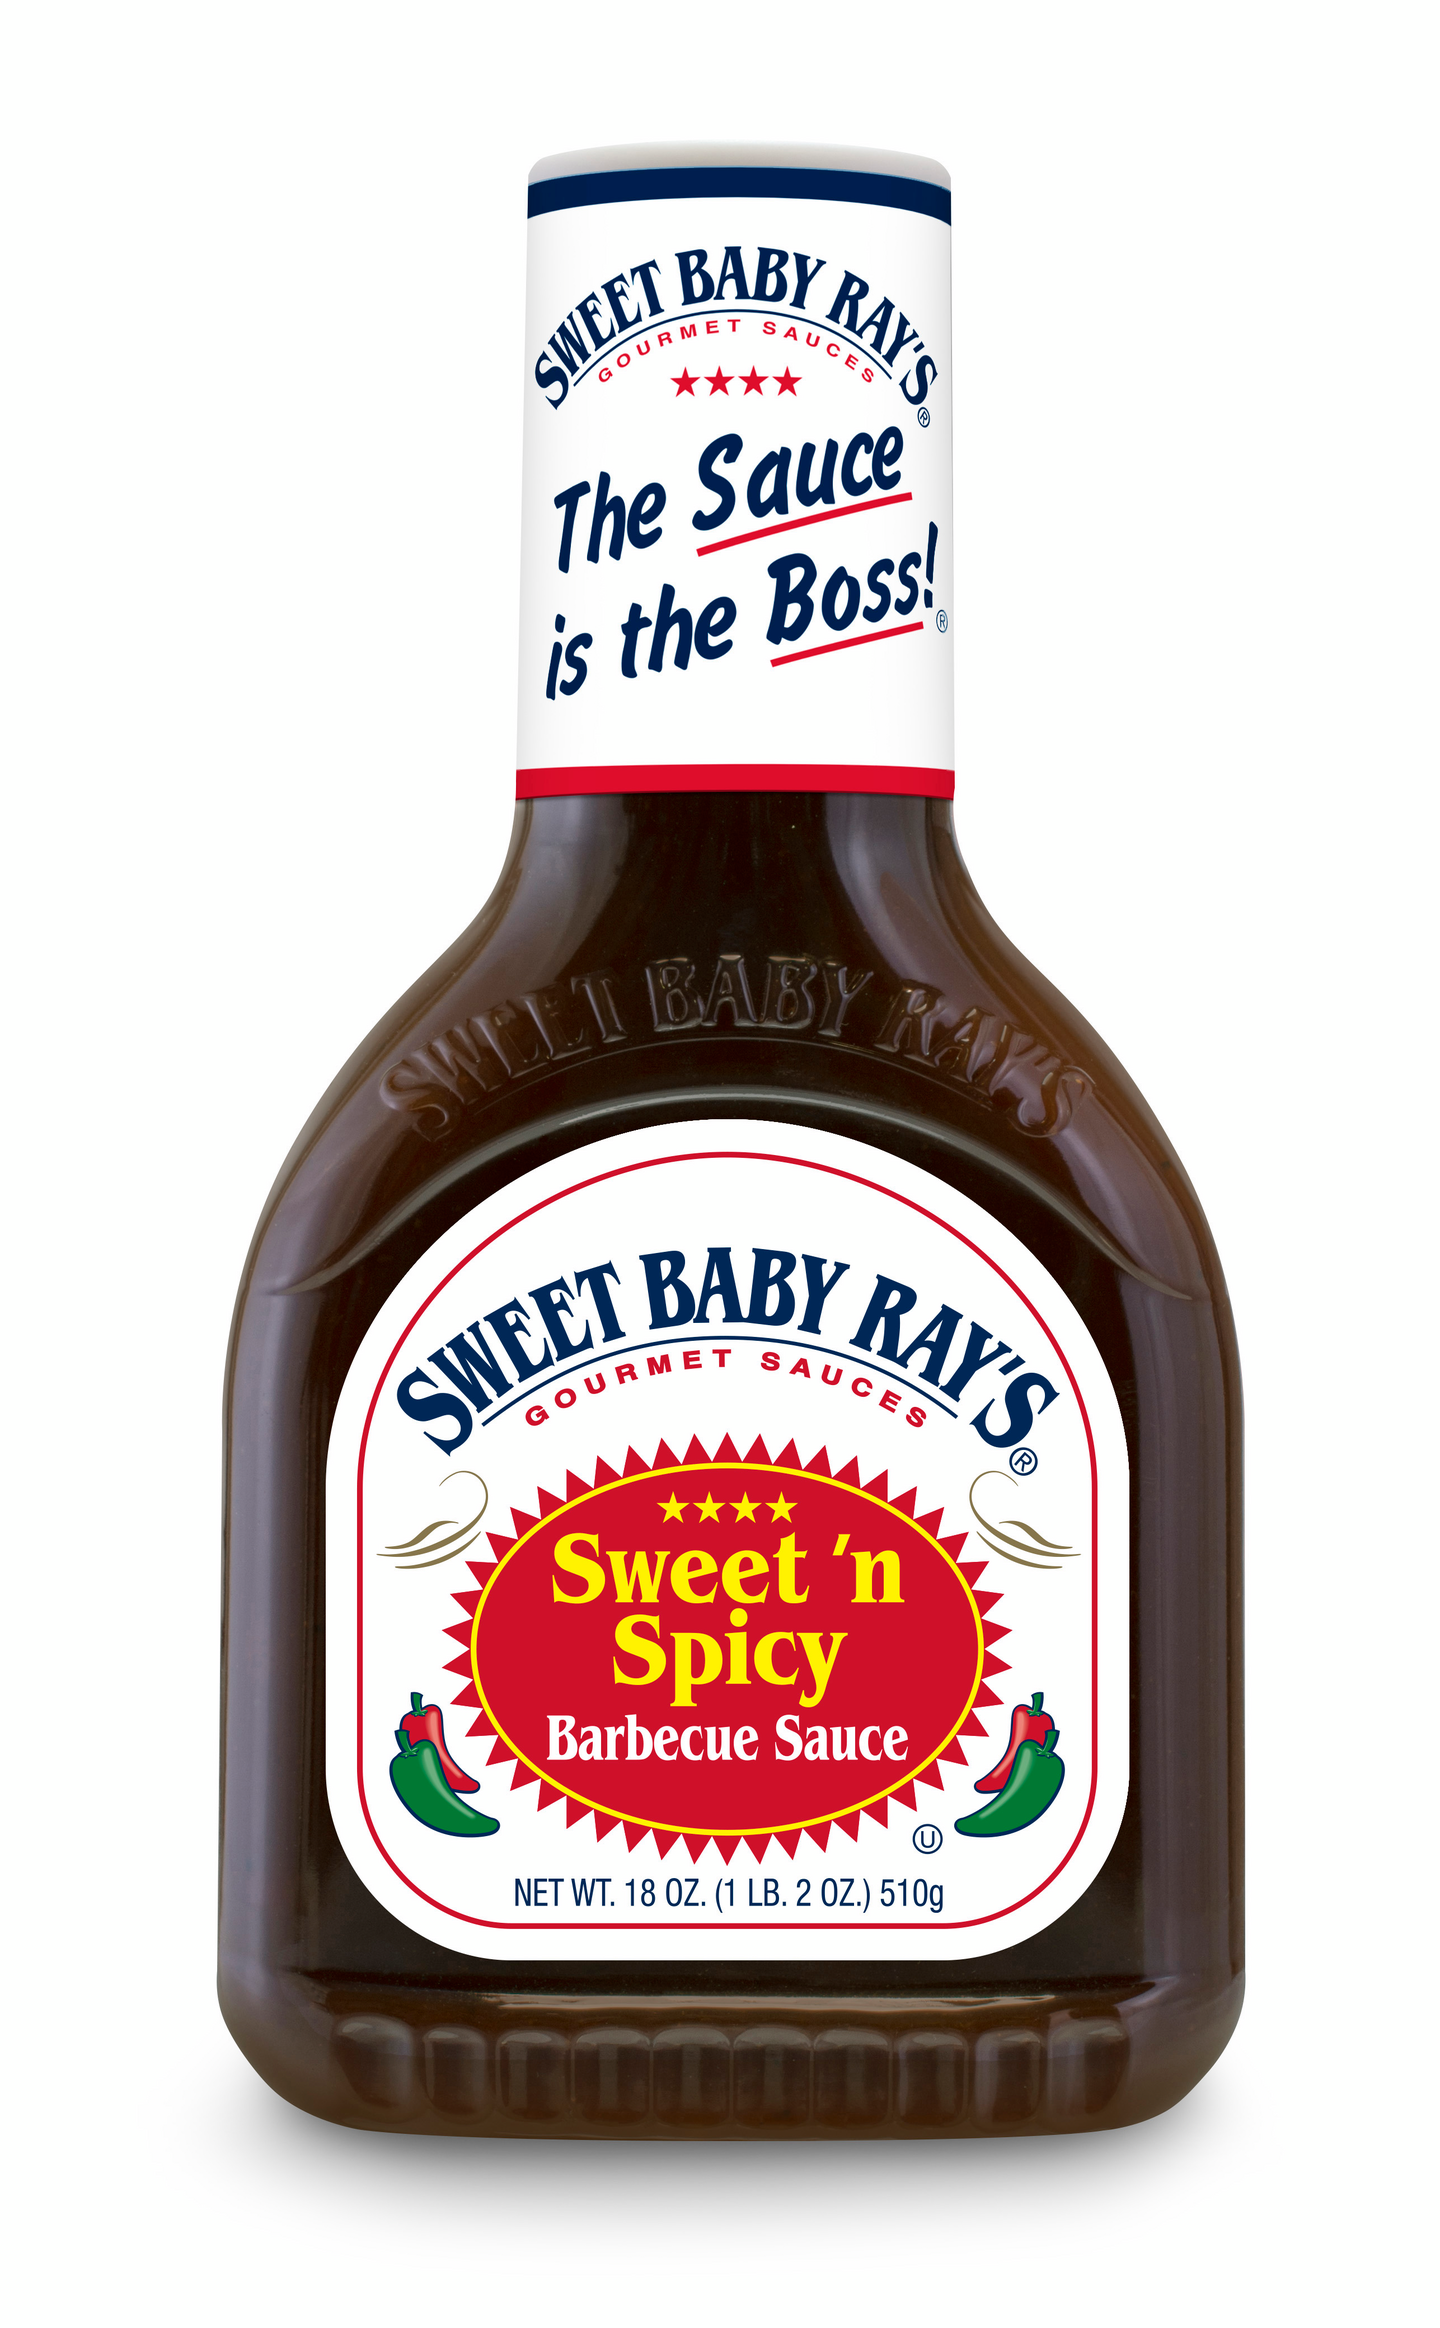 Sweet baby rays sweet n spicy bbq-kastike